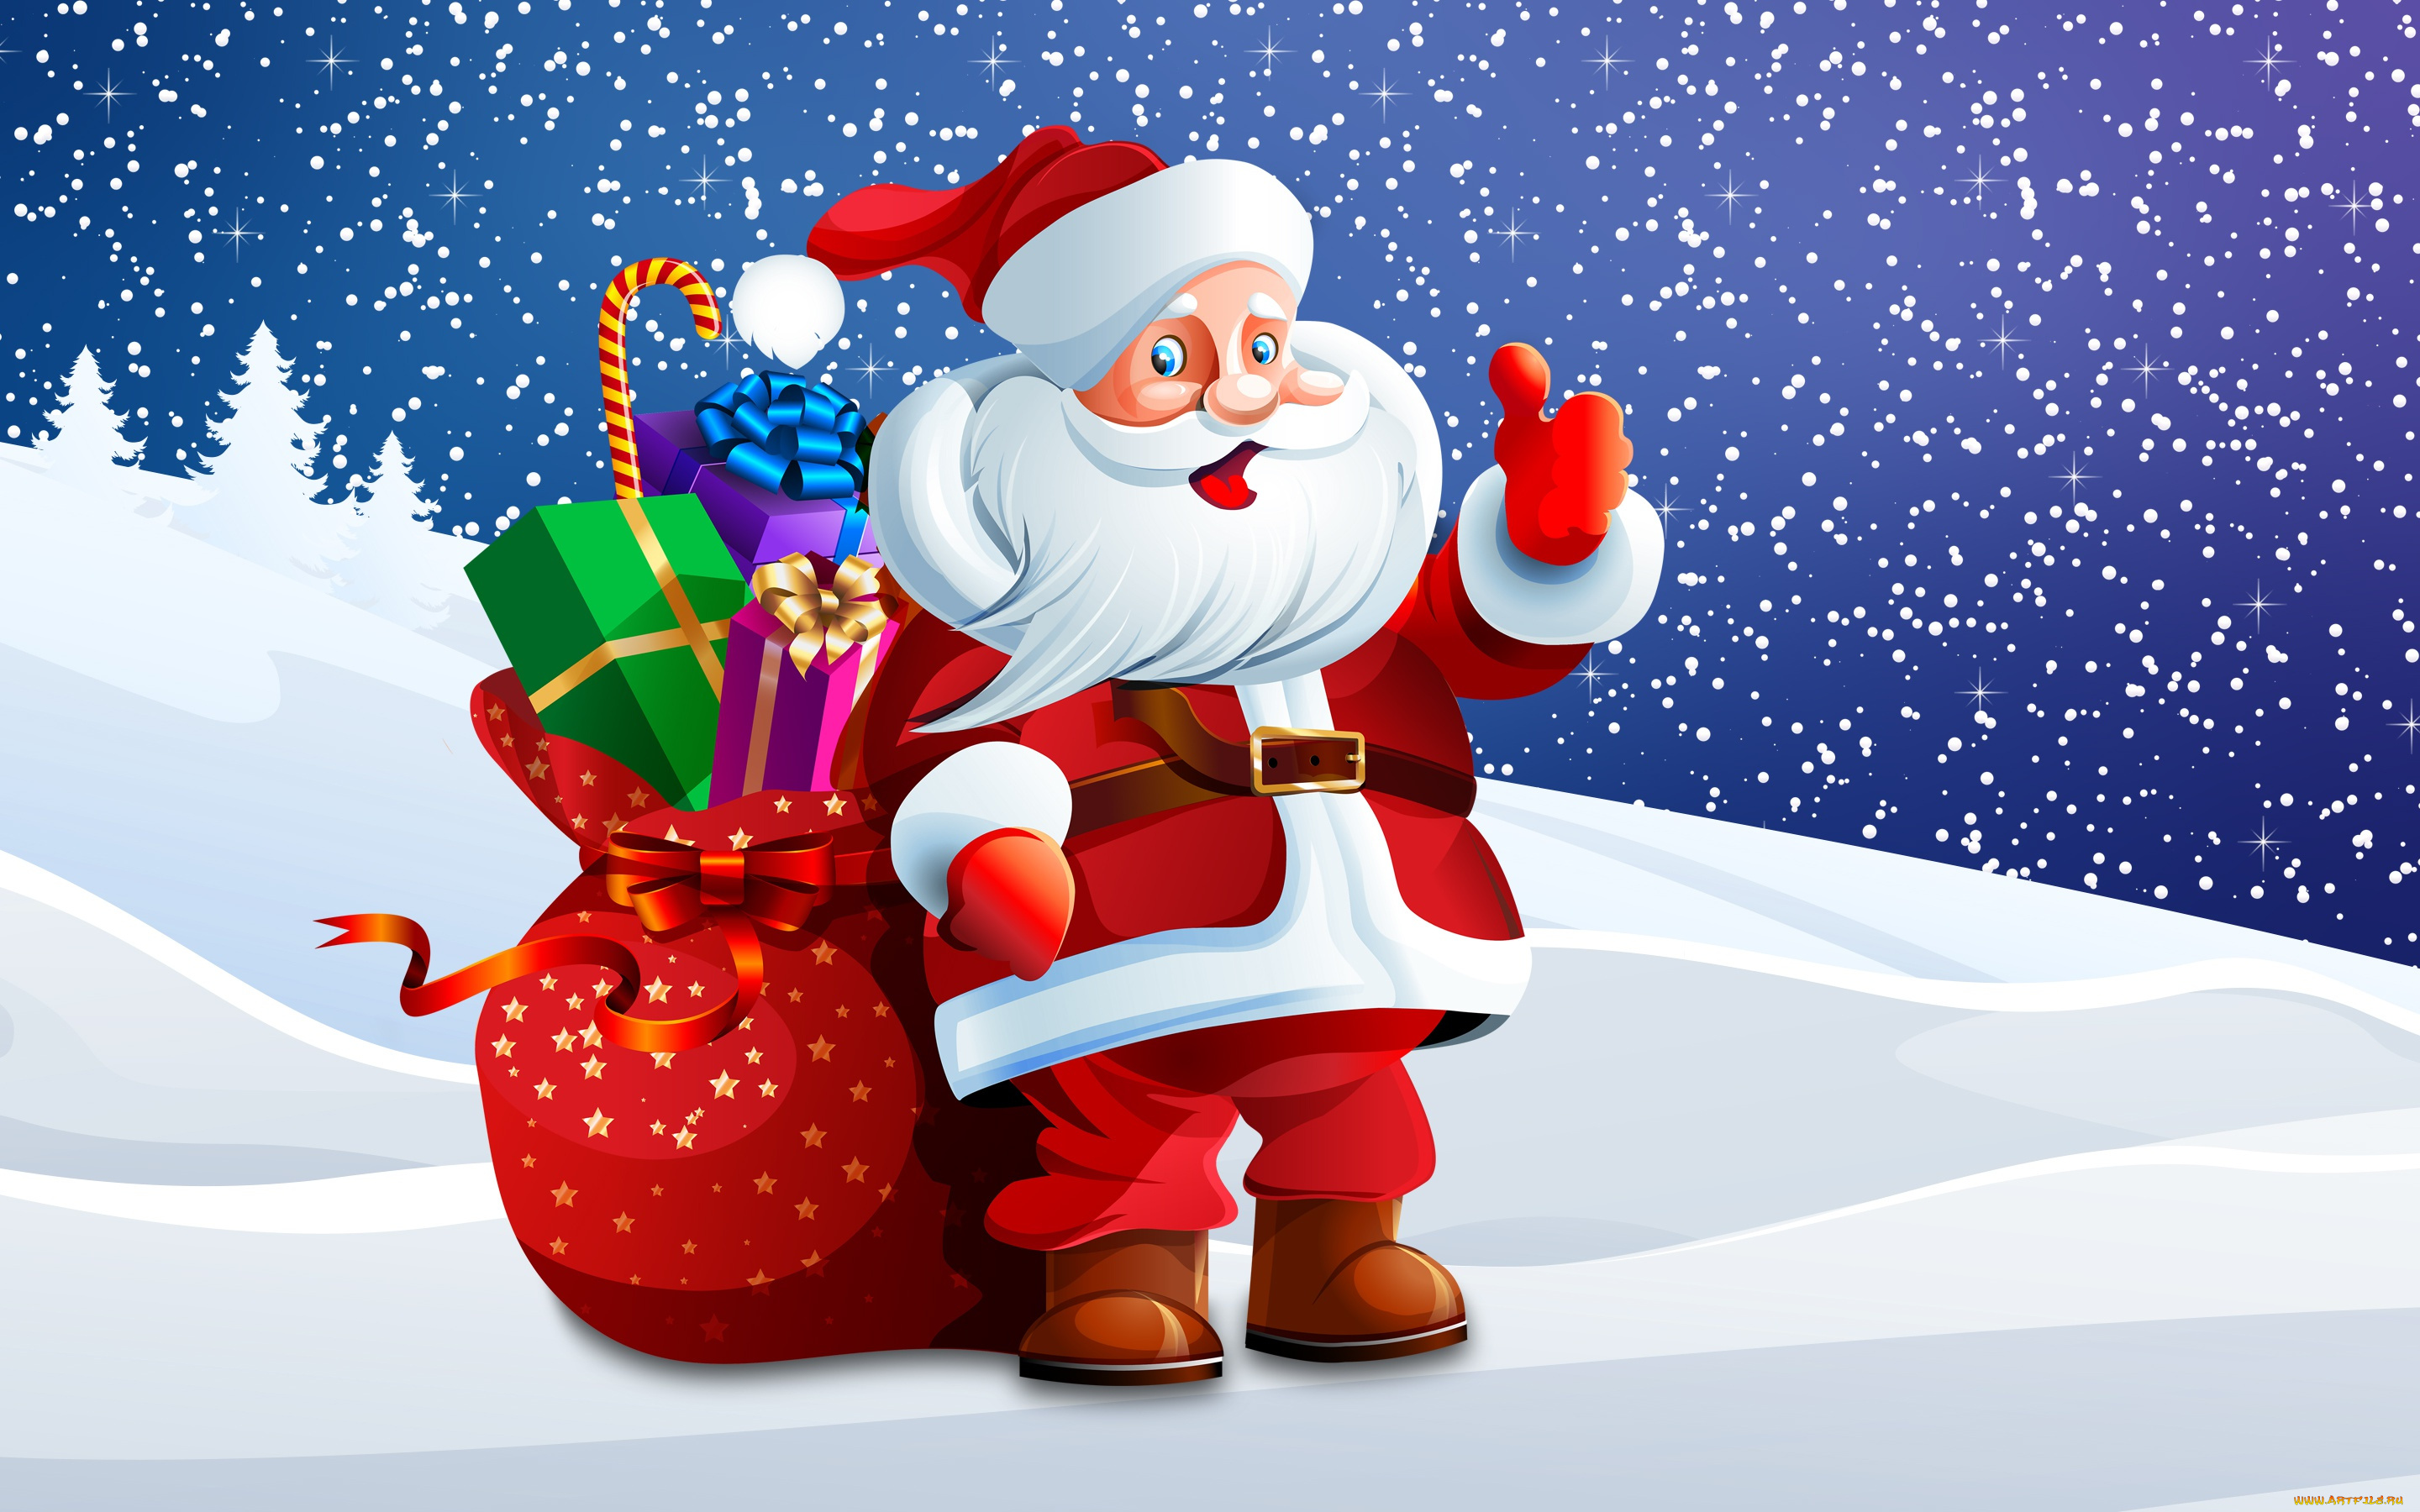 праздничные, векторная, графика, , новый, год, санта, мешок, костюм, дедушка, клаус, дед, новый, год, снежинки, фон, сугробы, праздник, рождество, снег, санта-клаус, -, подарки